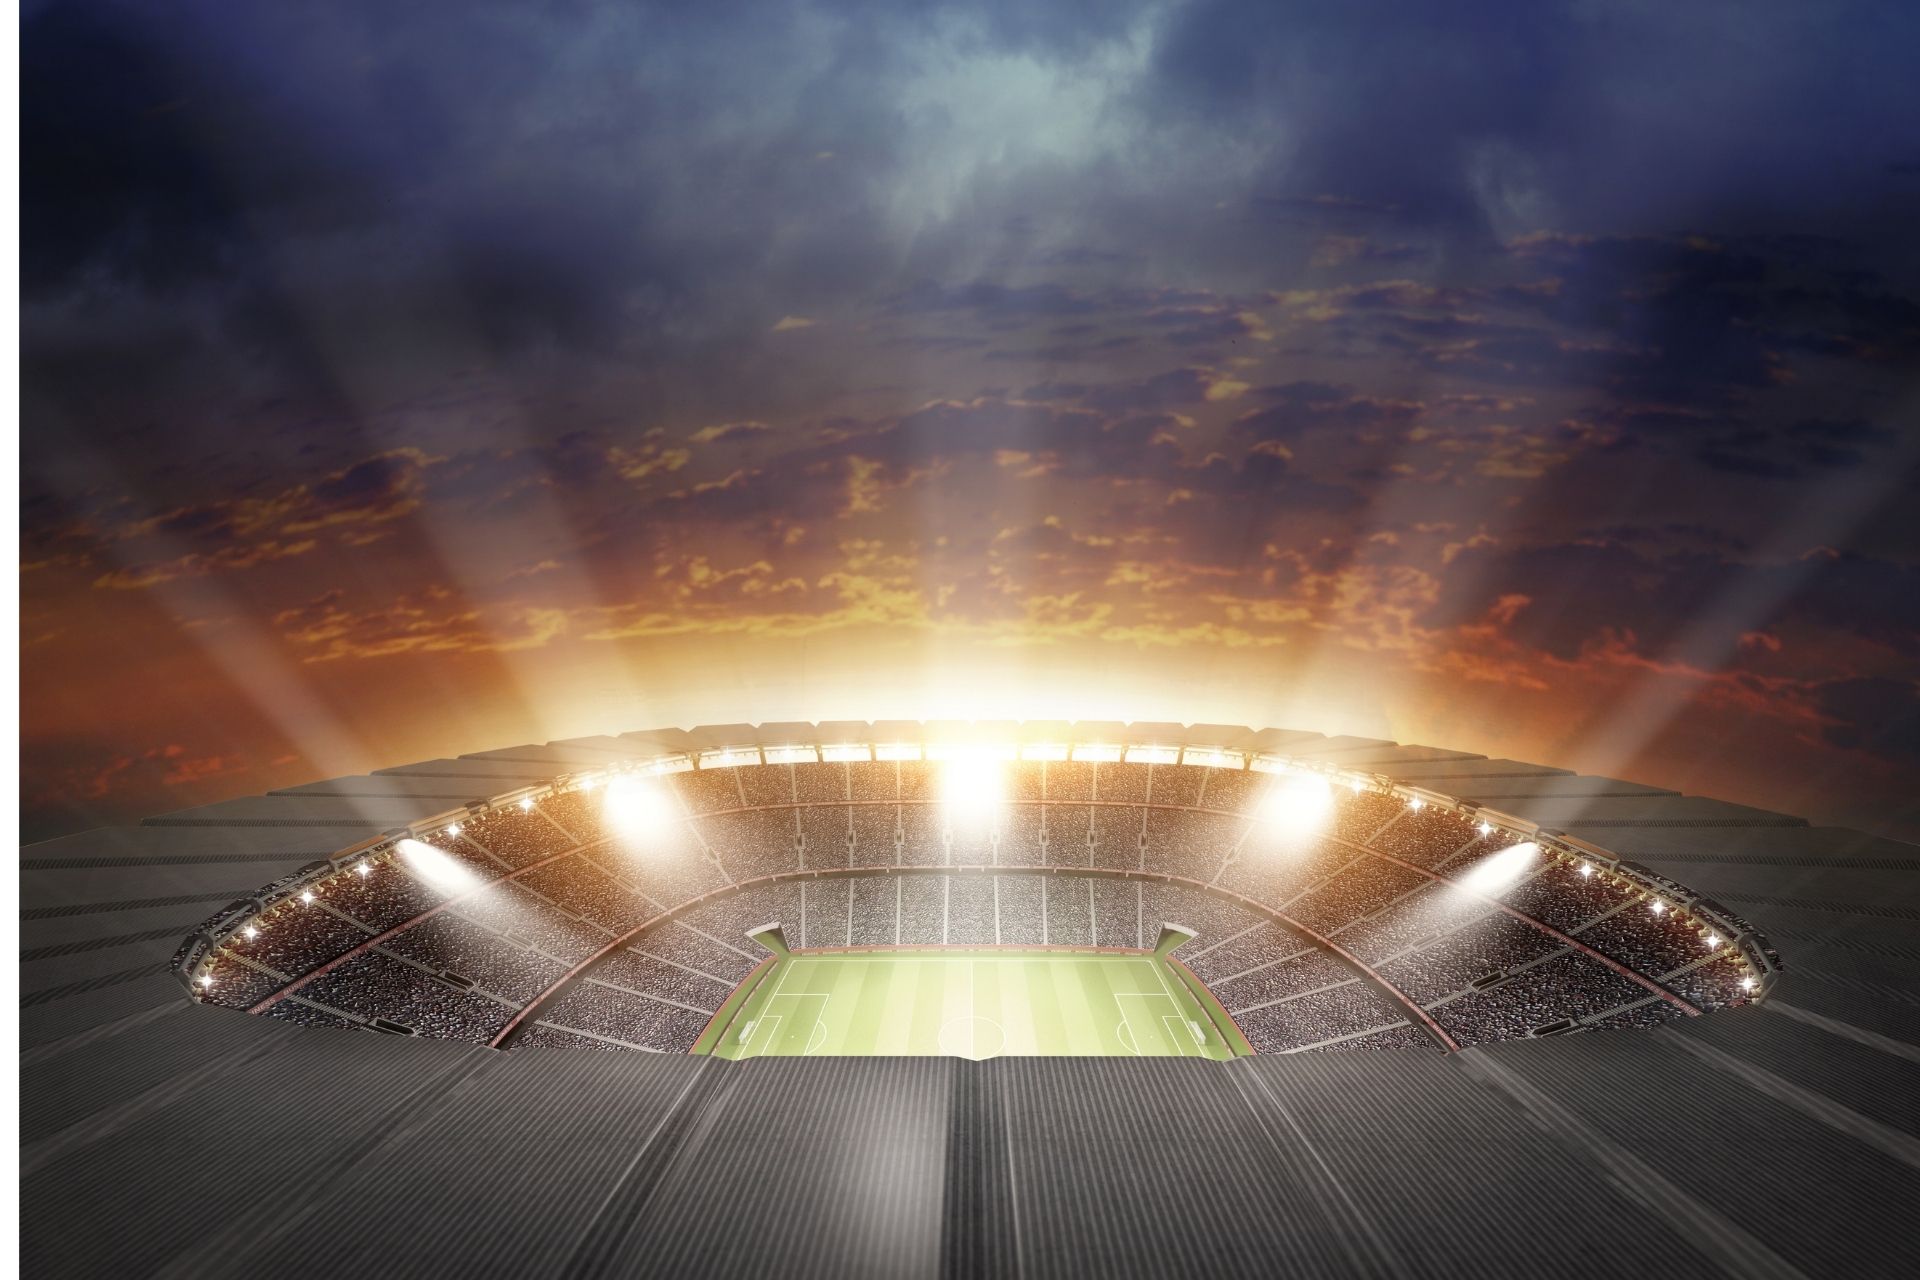 Na stadionie Estadio El Sadar miał miejsce mecz pomiędzy Osasuna oraz Atletico Madrid zakończony wynikiem 0-1